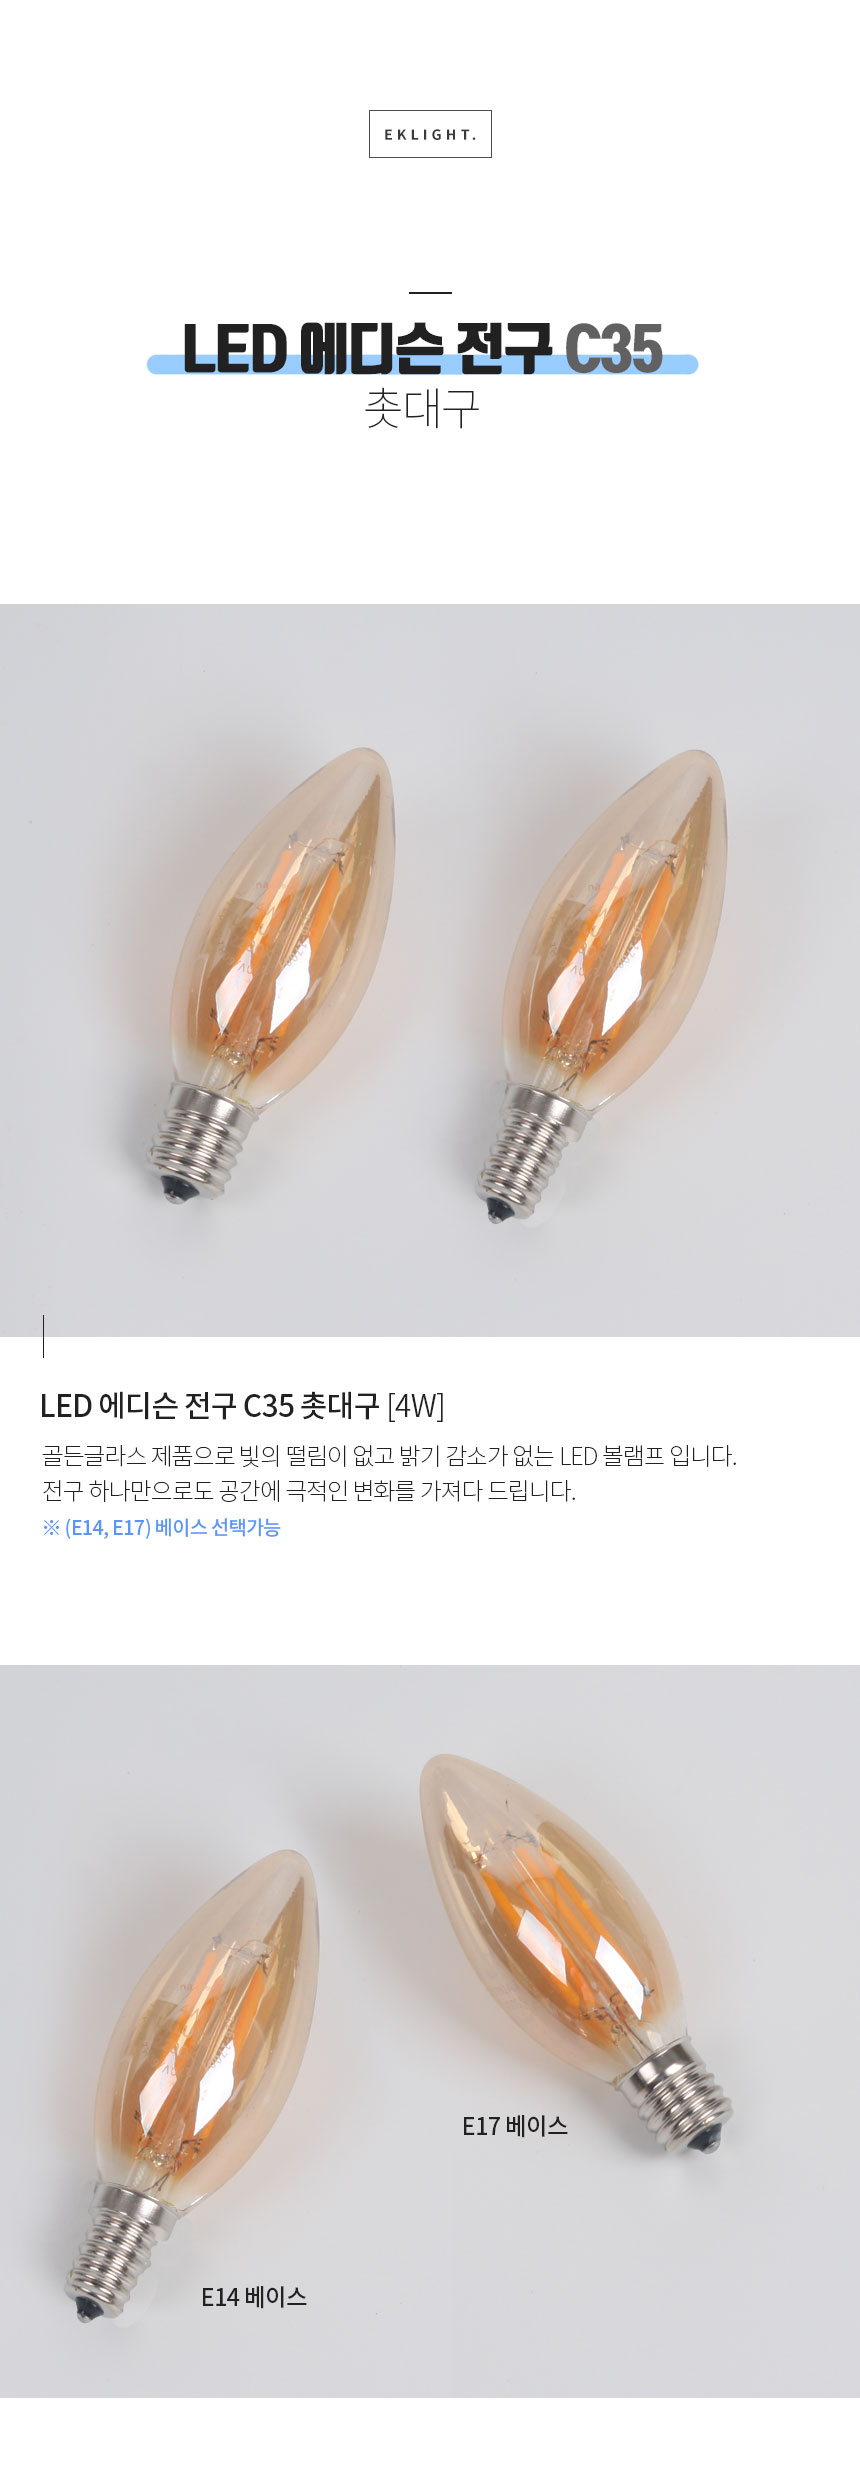 LED 에디슨 전구 C35 촛대구 E14 E17 [4W] 골든글라스 제품으로 빛의 떨림이 없고 밝기 감소가 없는 LED 볼램프 입니다.
전구 하나만으로도 공간에 극적인 변화를 가져다 드립니다. ※ (E14, E17) 베이스 선택가능